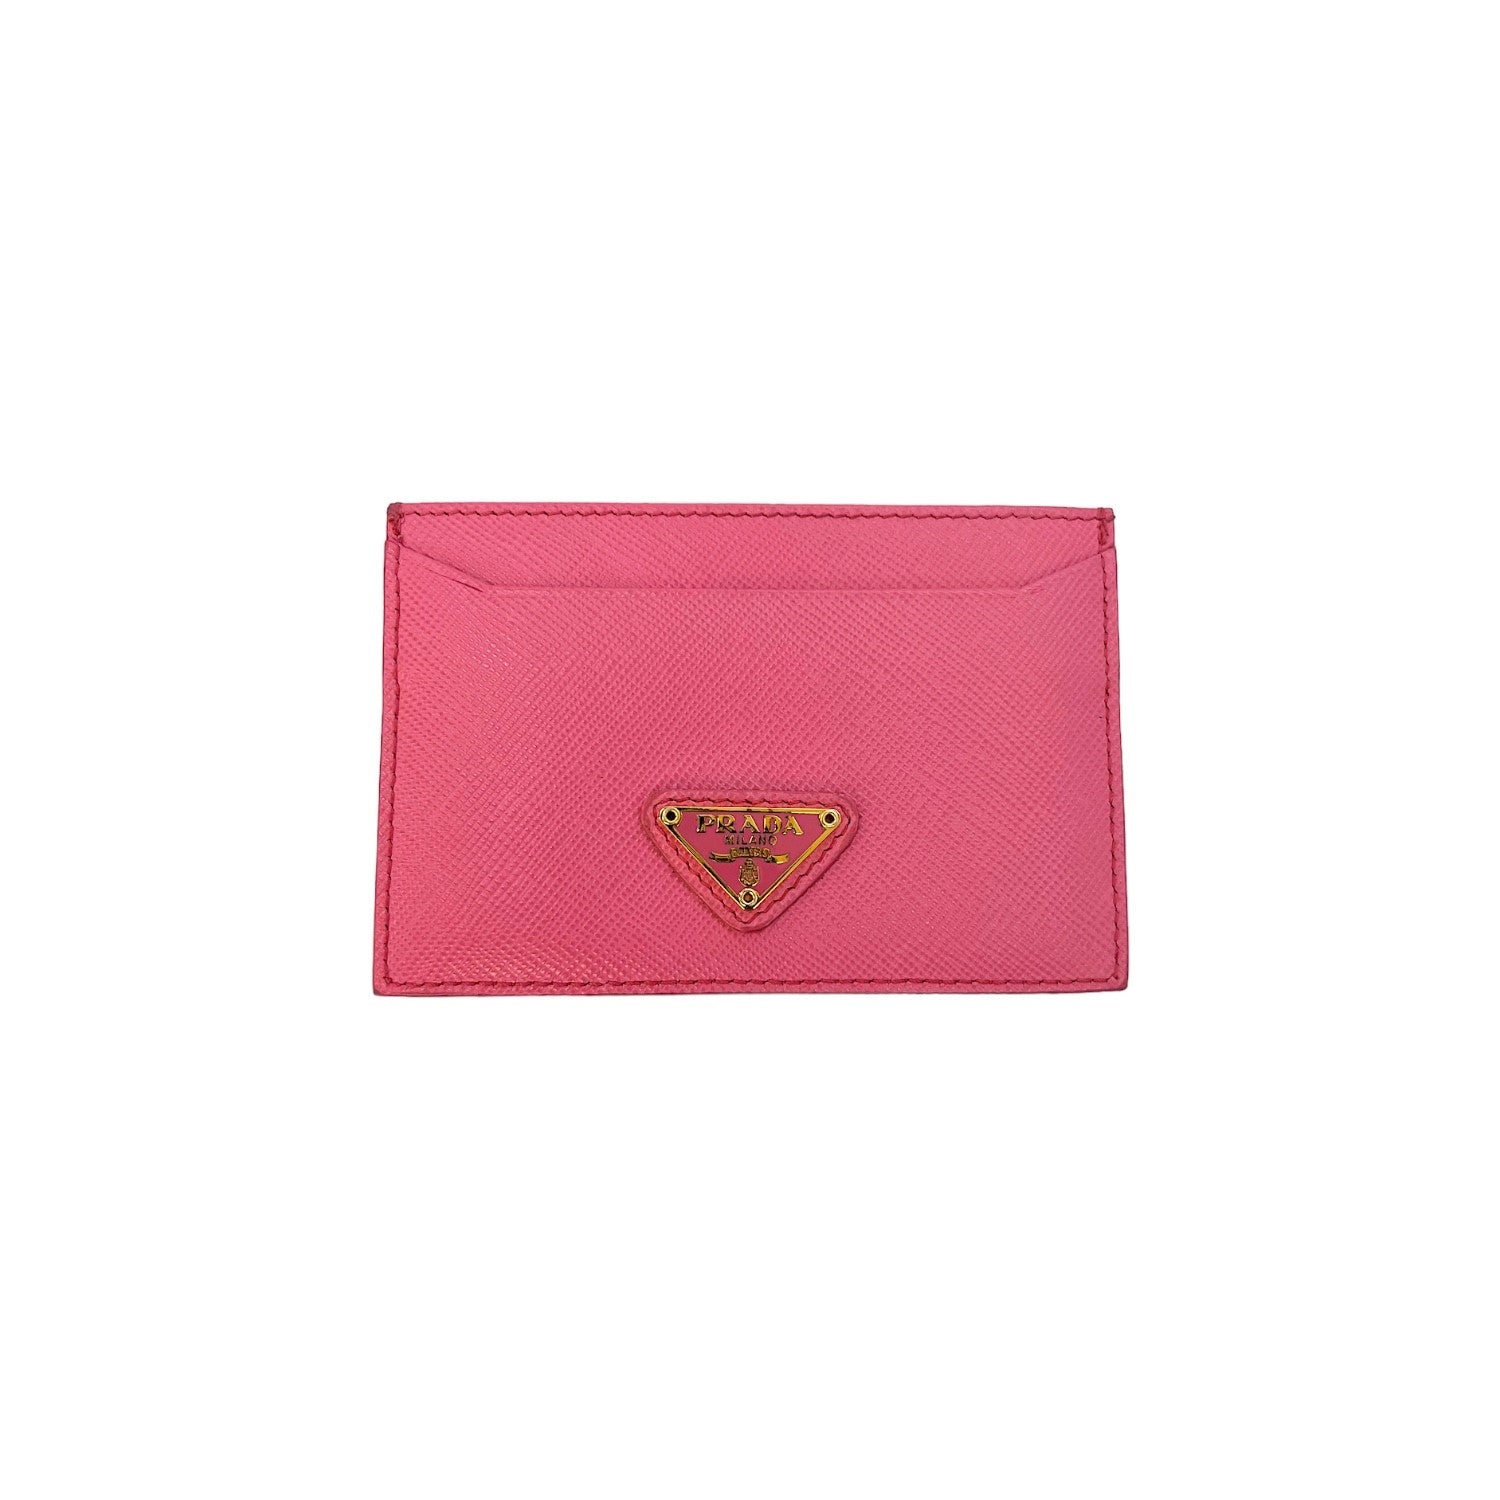 Prada Pink Saffiano Card Holder - TheRelux.com